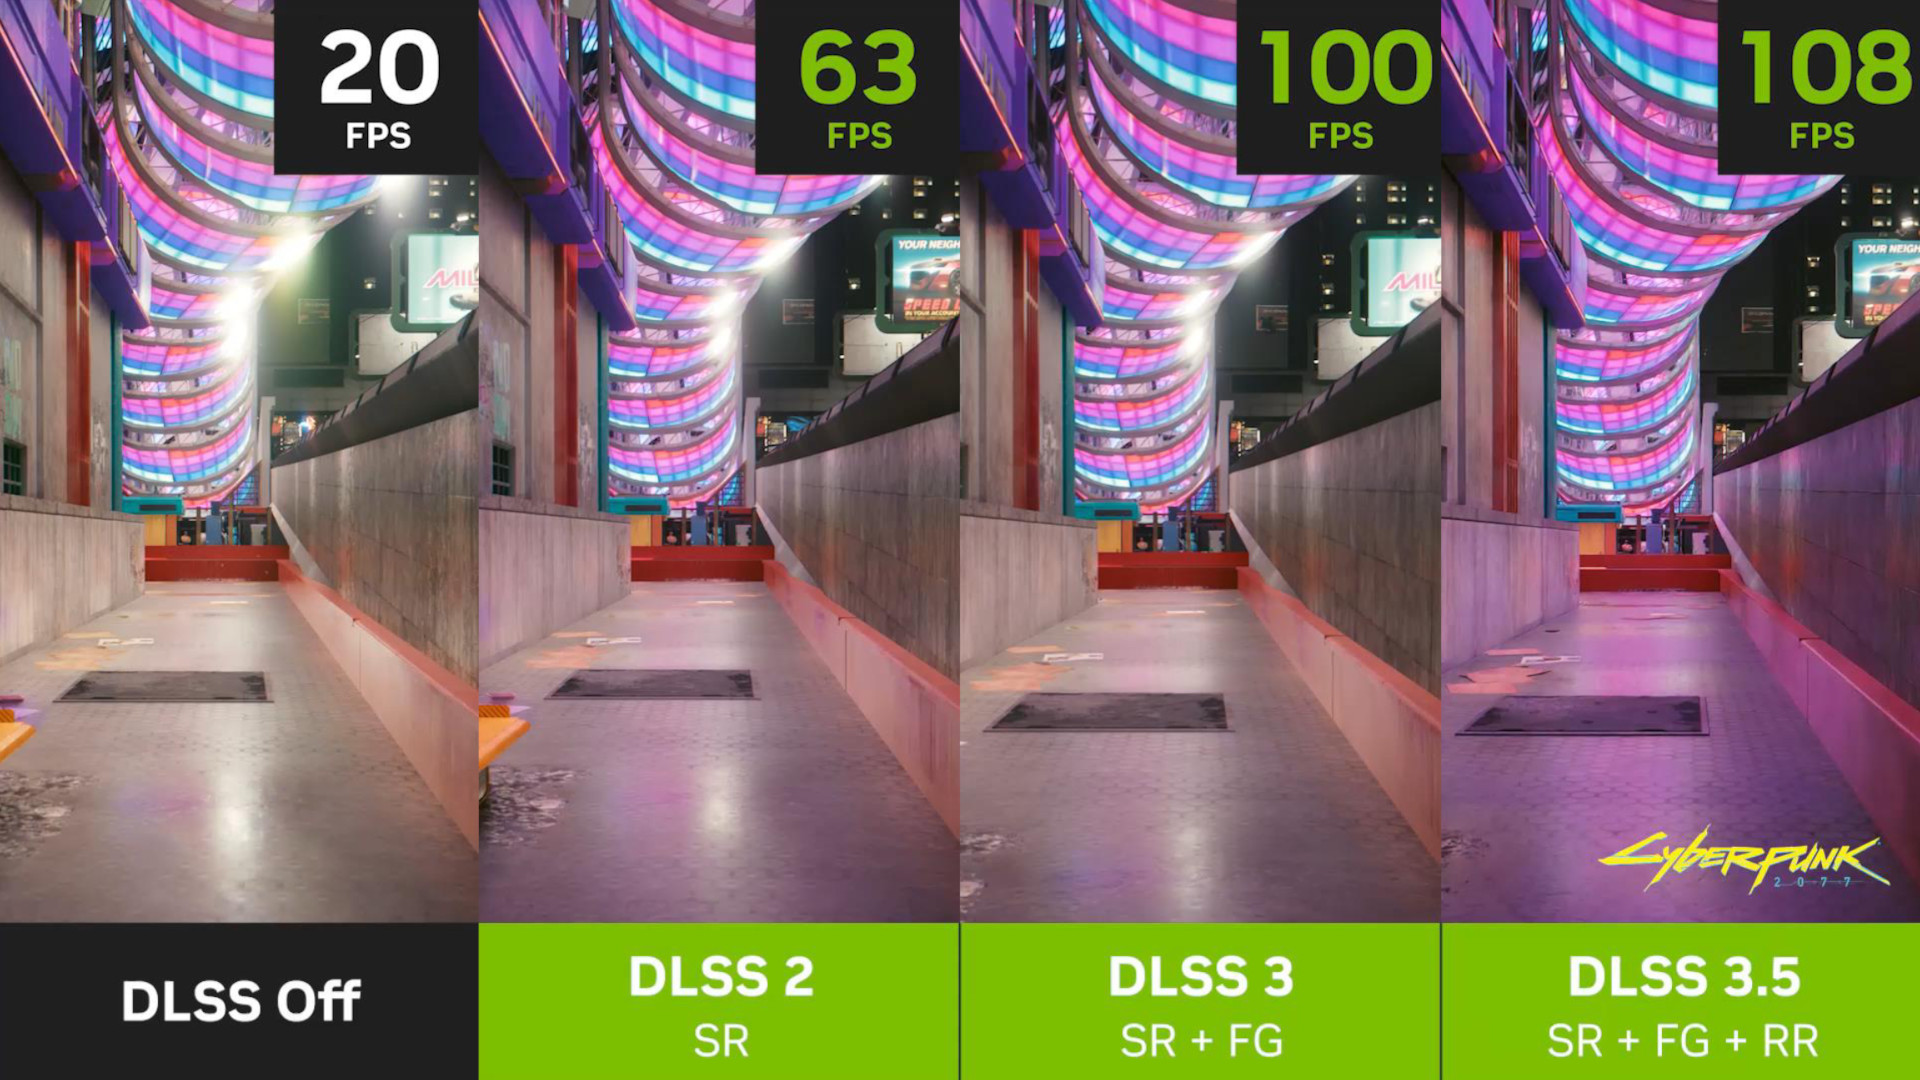 Nvidia DLSS 3.5 : Quatre images de Cyberpunk 2077, dans lesquelles DLSS est désactivé et fonctionne à 20 ips (à gauche), DLSS 2 est activé et fonctionne à 63 ips (au centre à gauche), DLSS 3 est activé et fonctionne à 100 ips (au centre à droite), et DLSS 3.5 est activé et fonctionne à 108 ips (à droite)